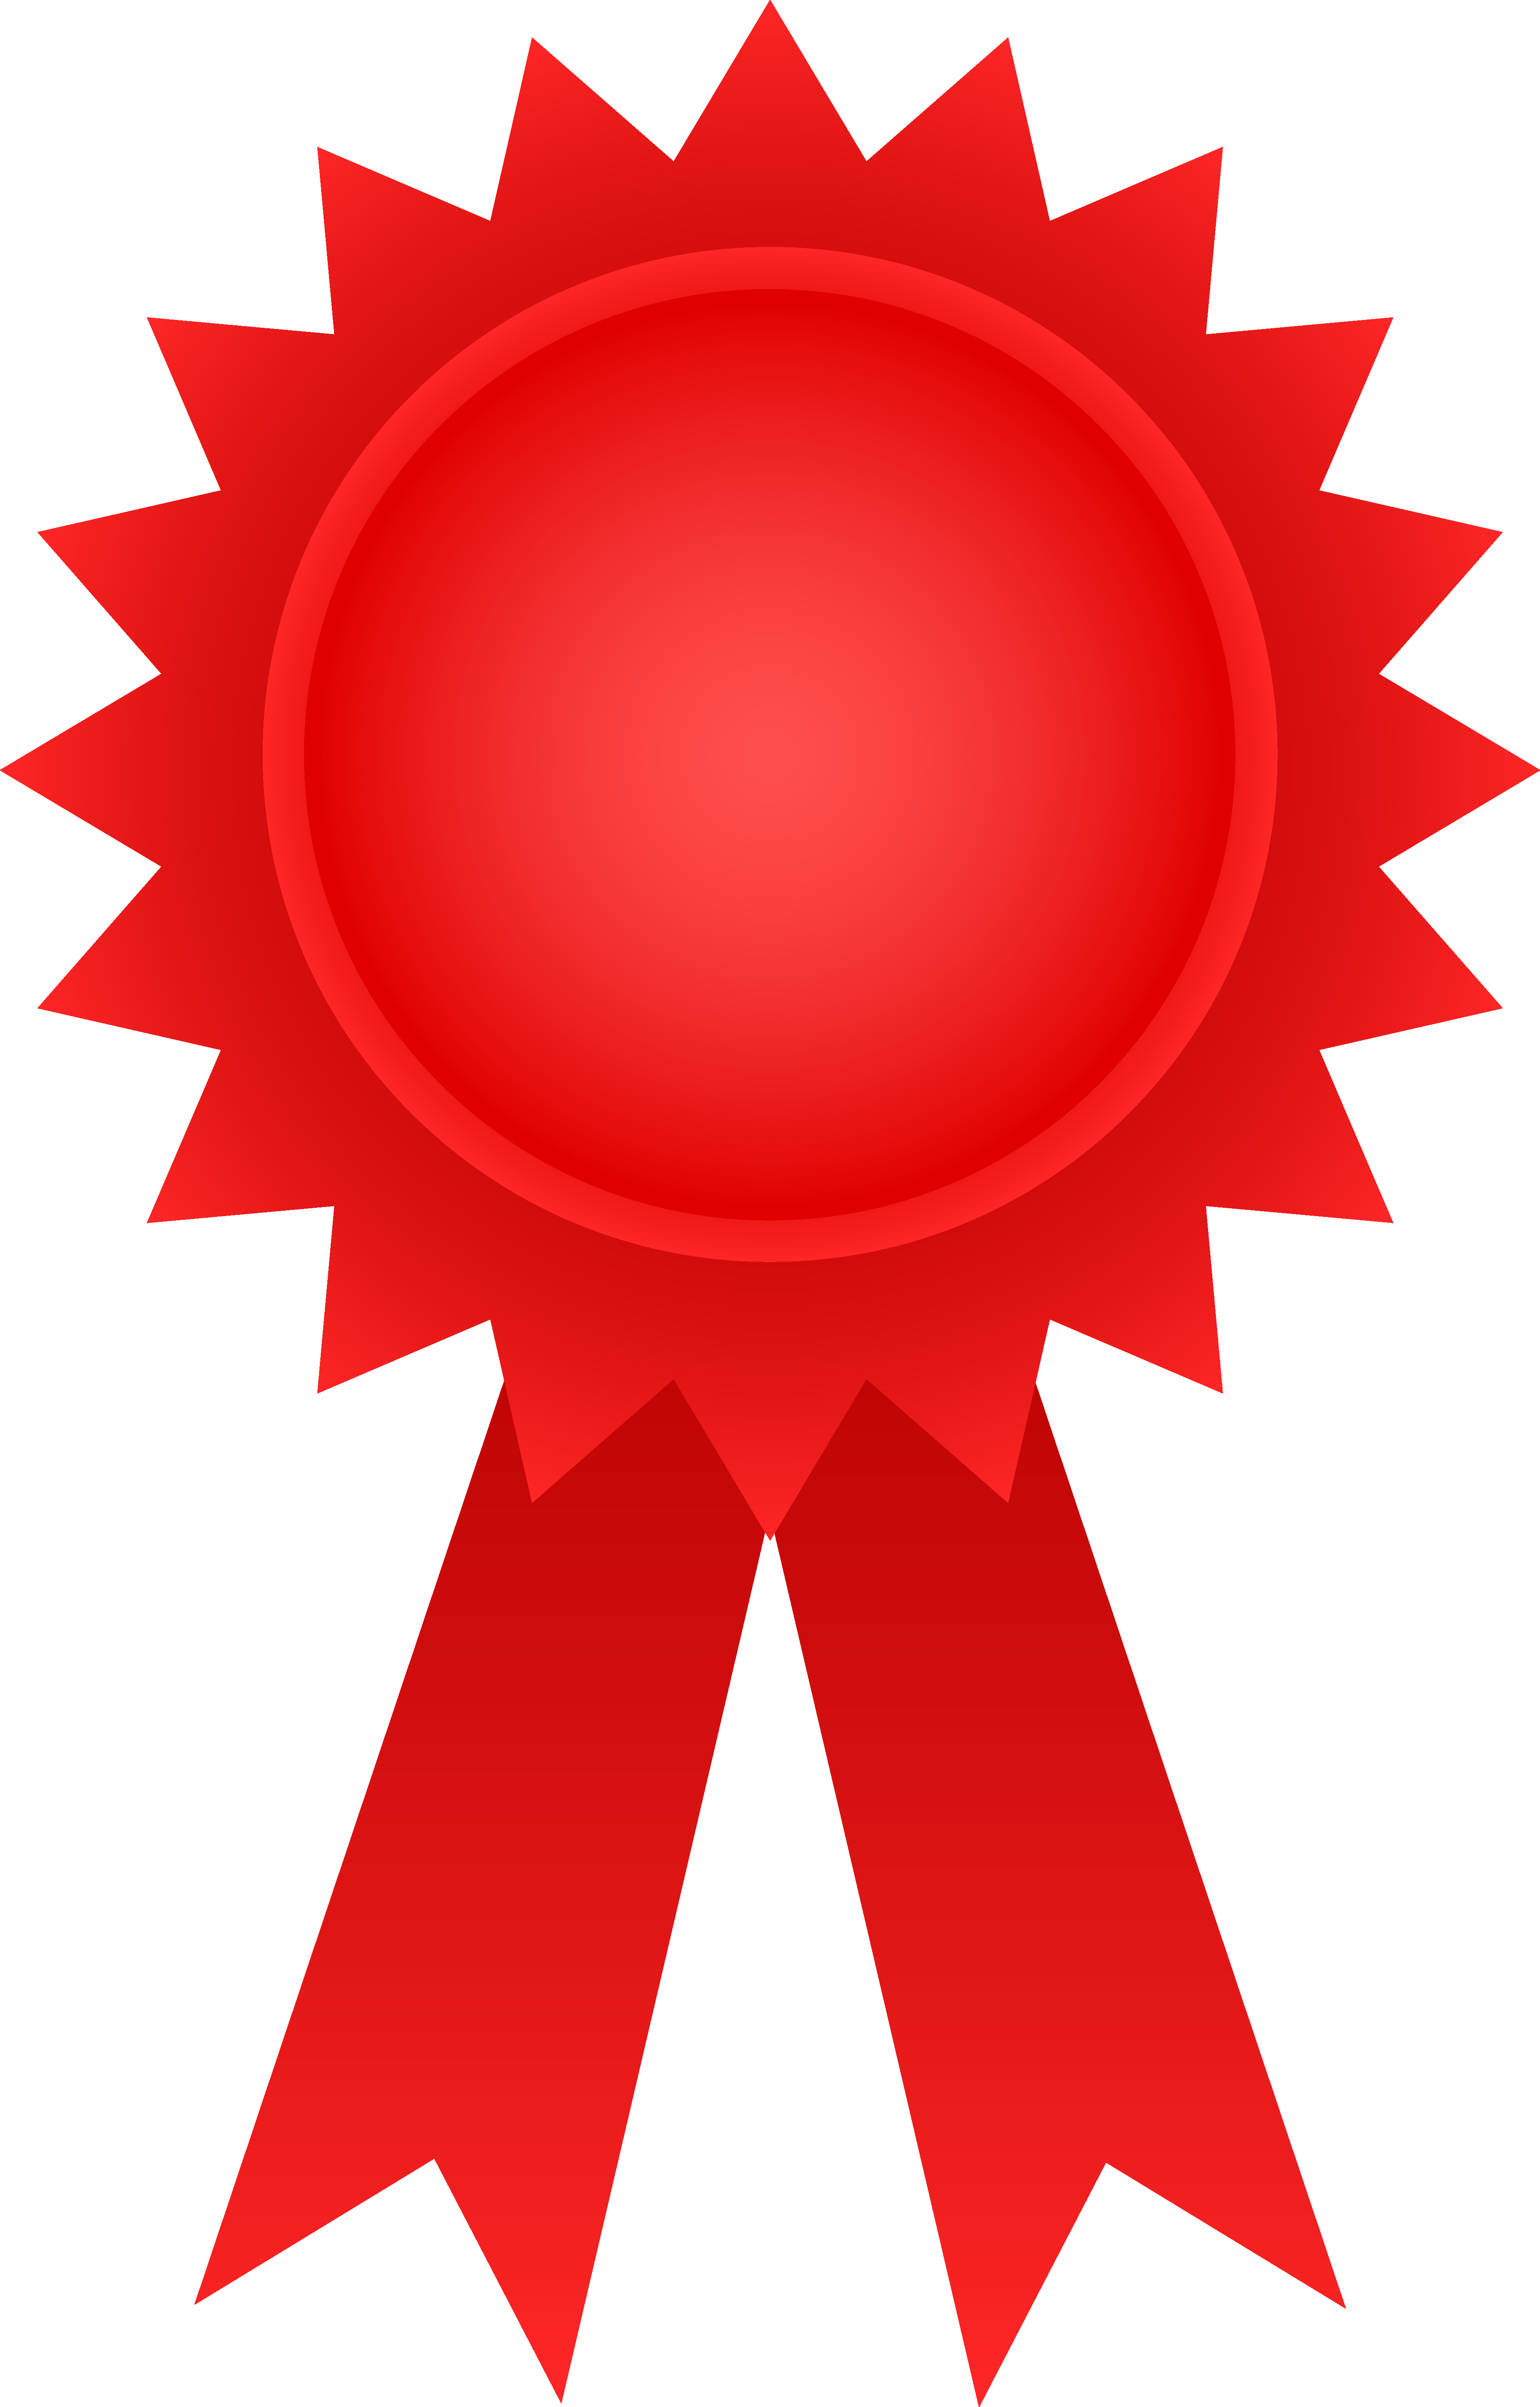 Red Award Ribbon - Free Clip Art